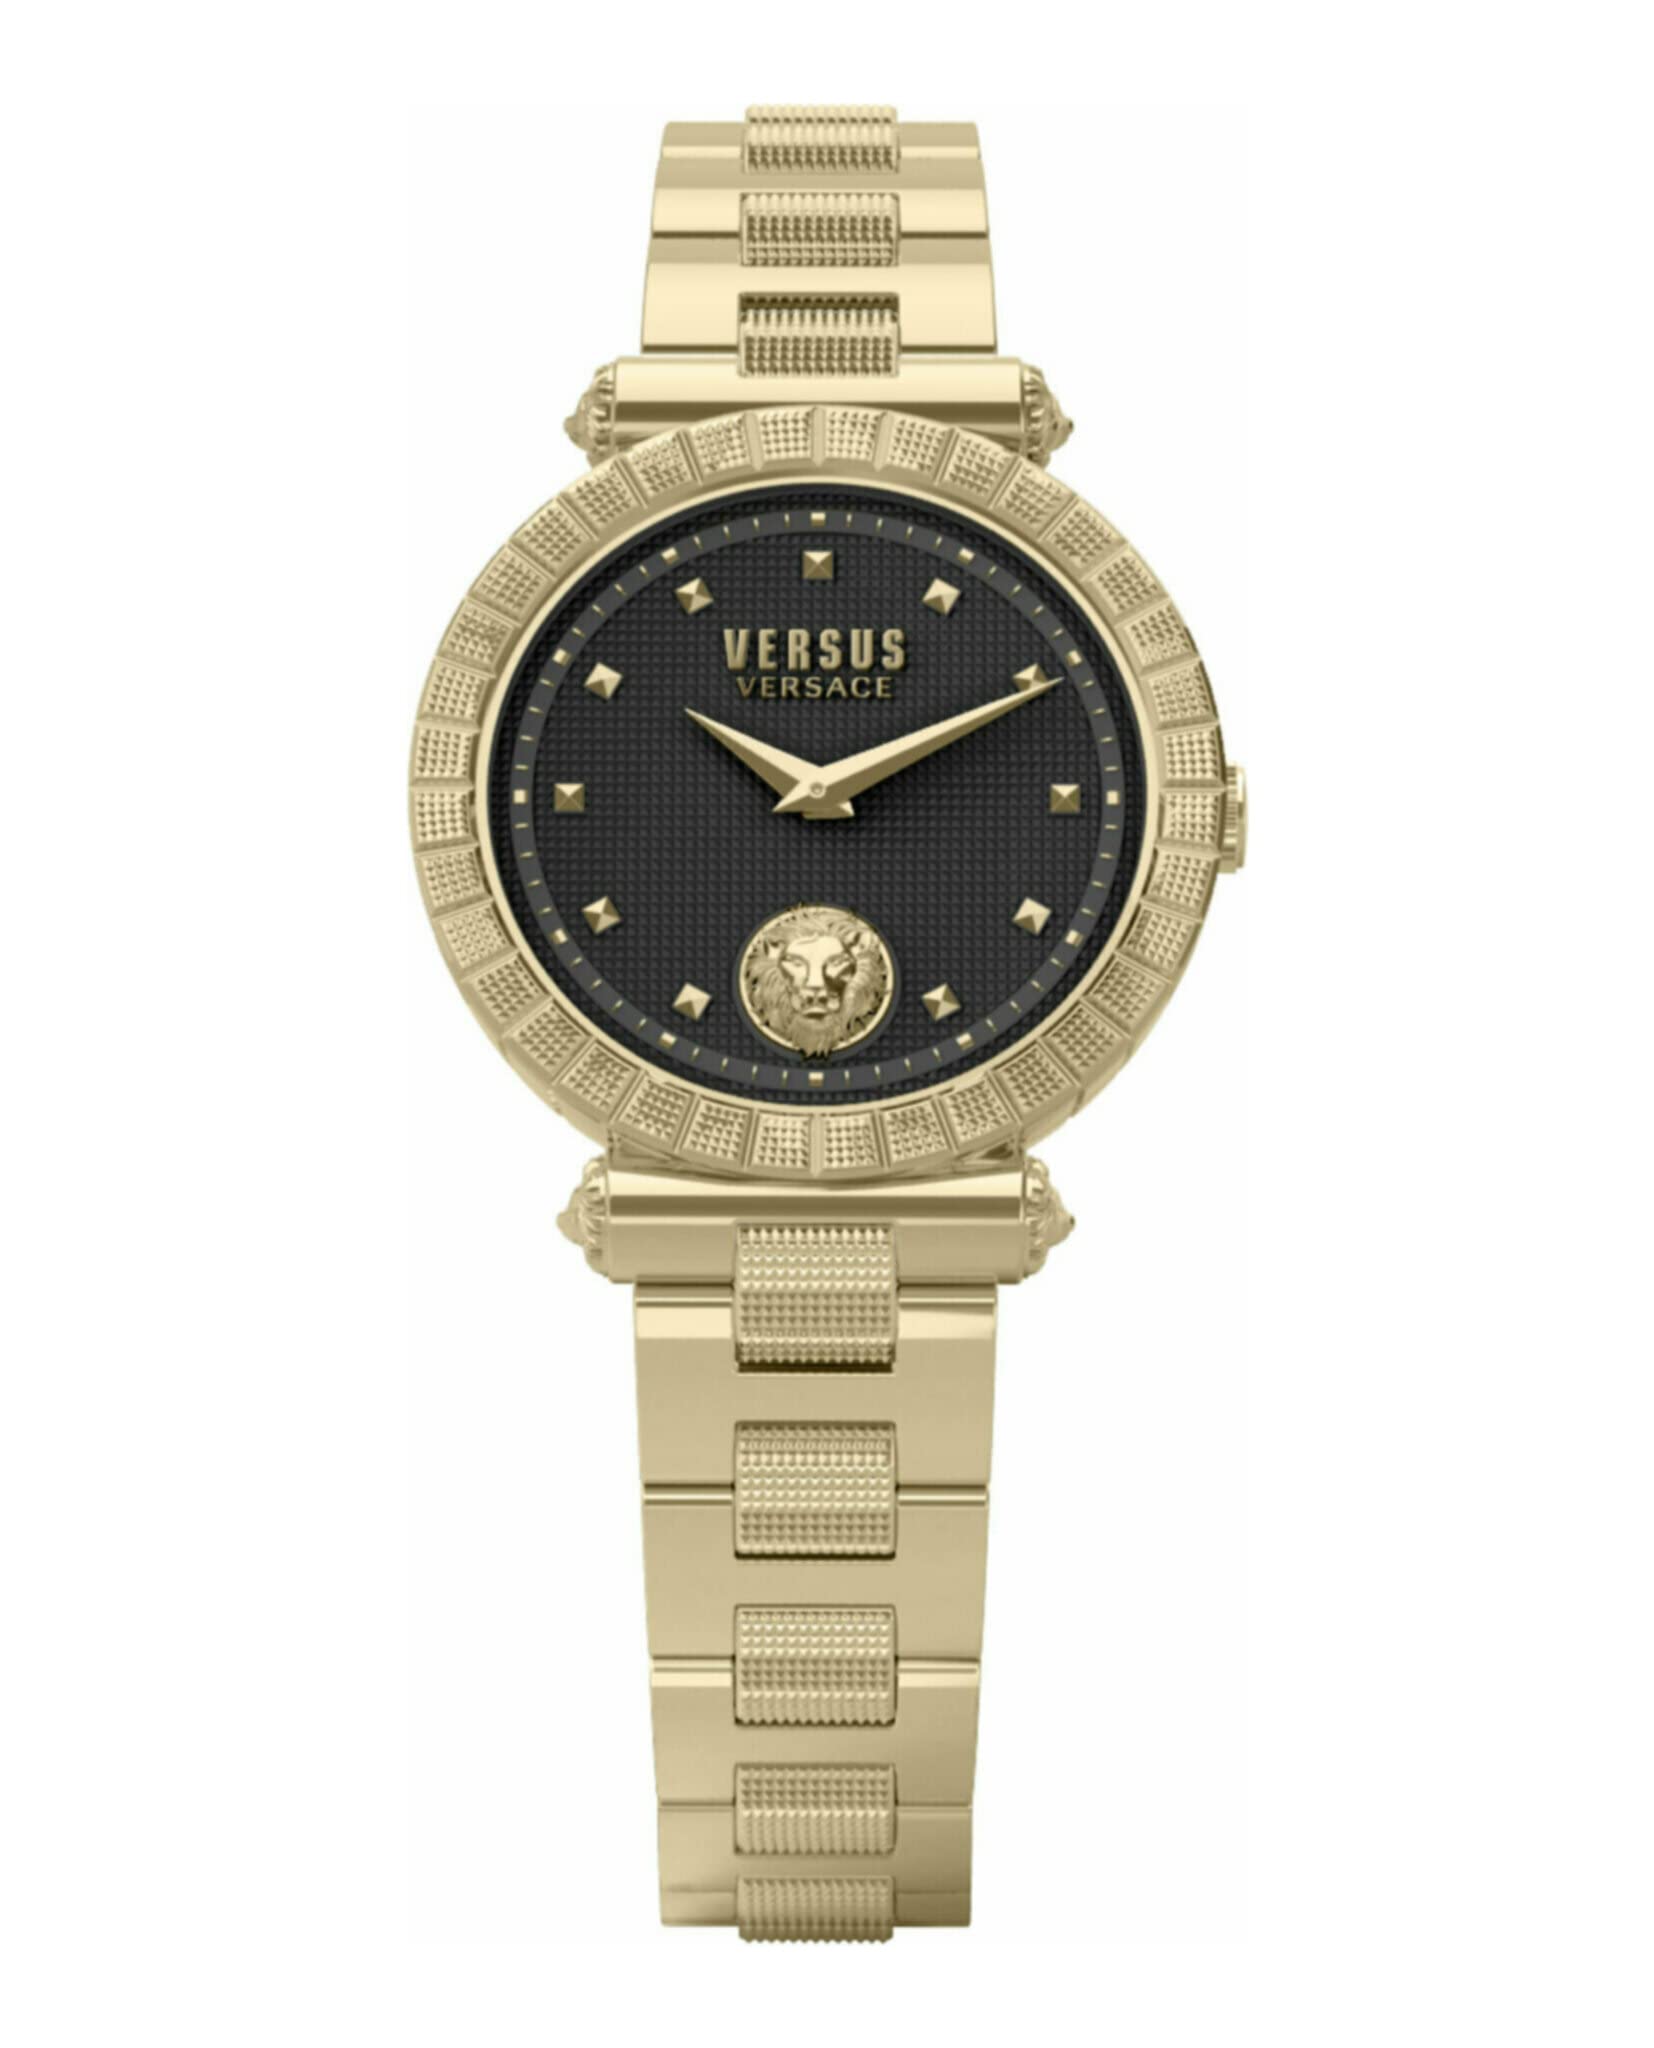 Republique Bracelet Watch